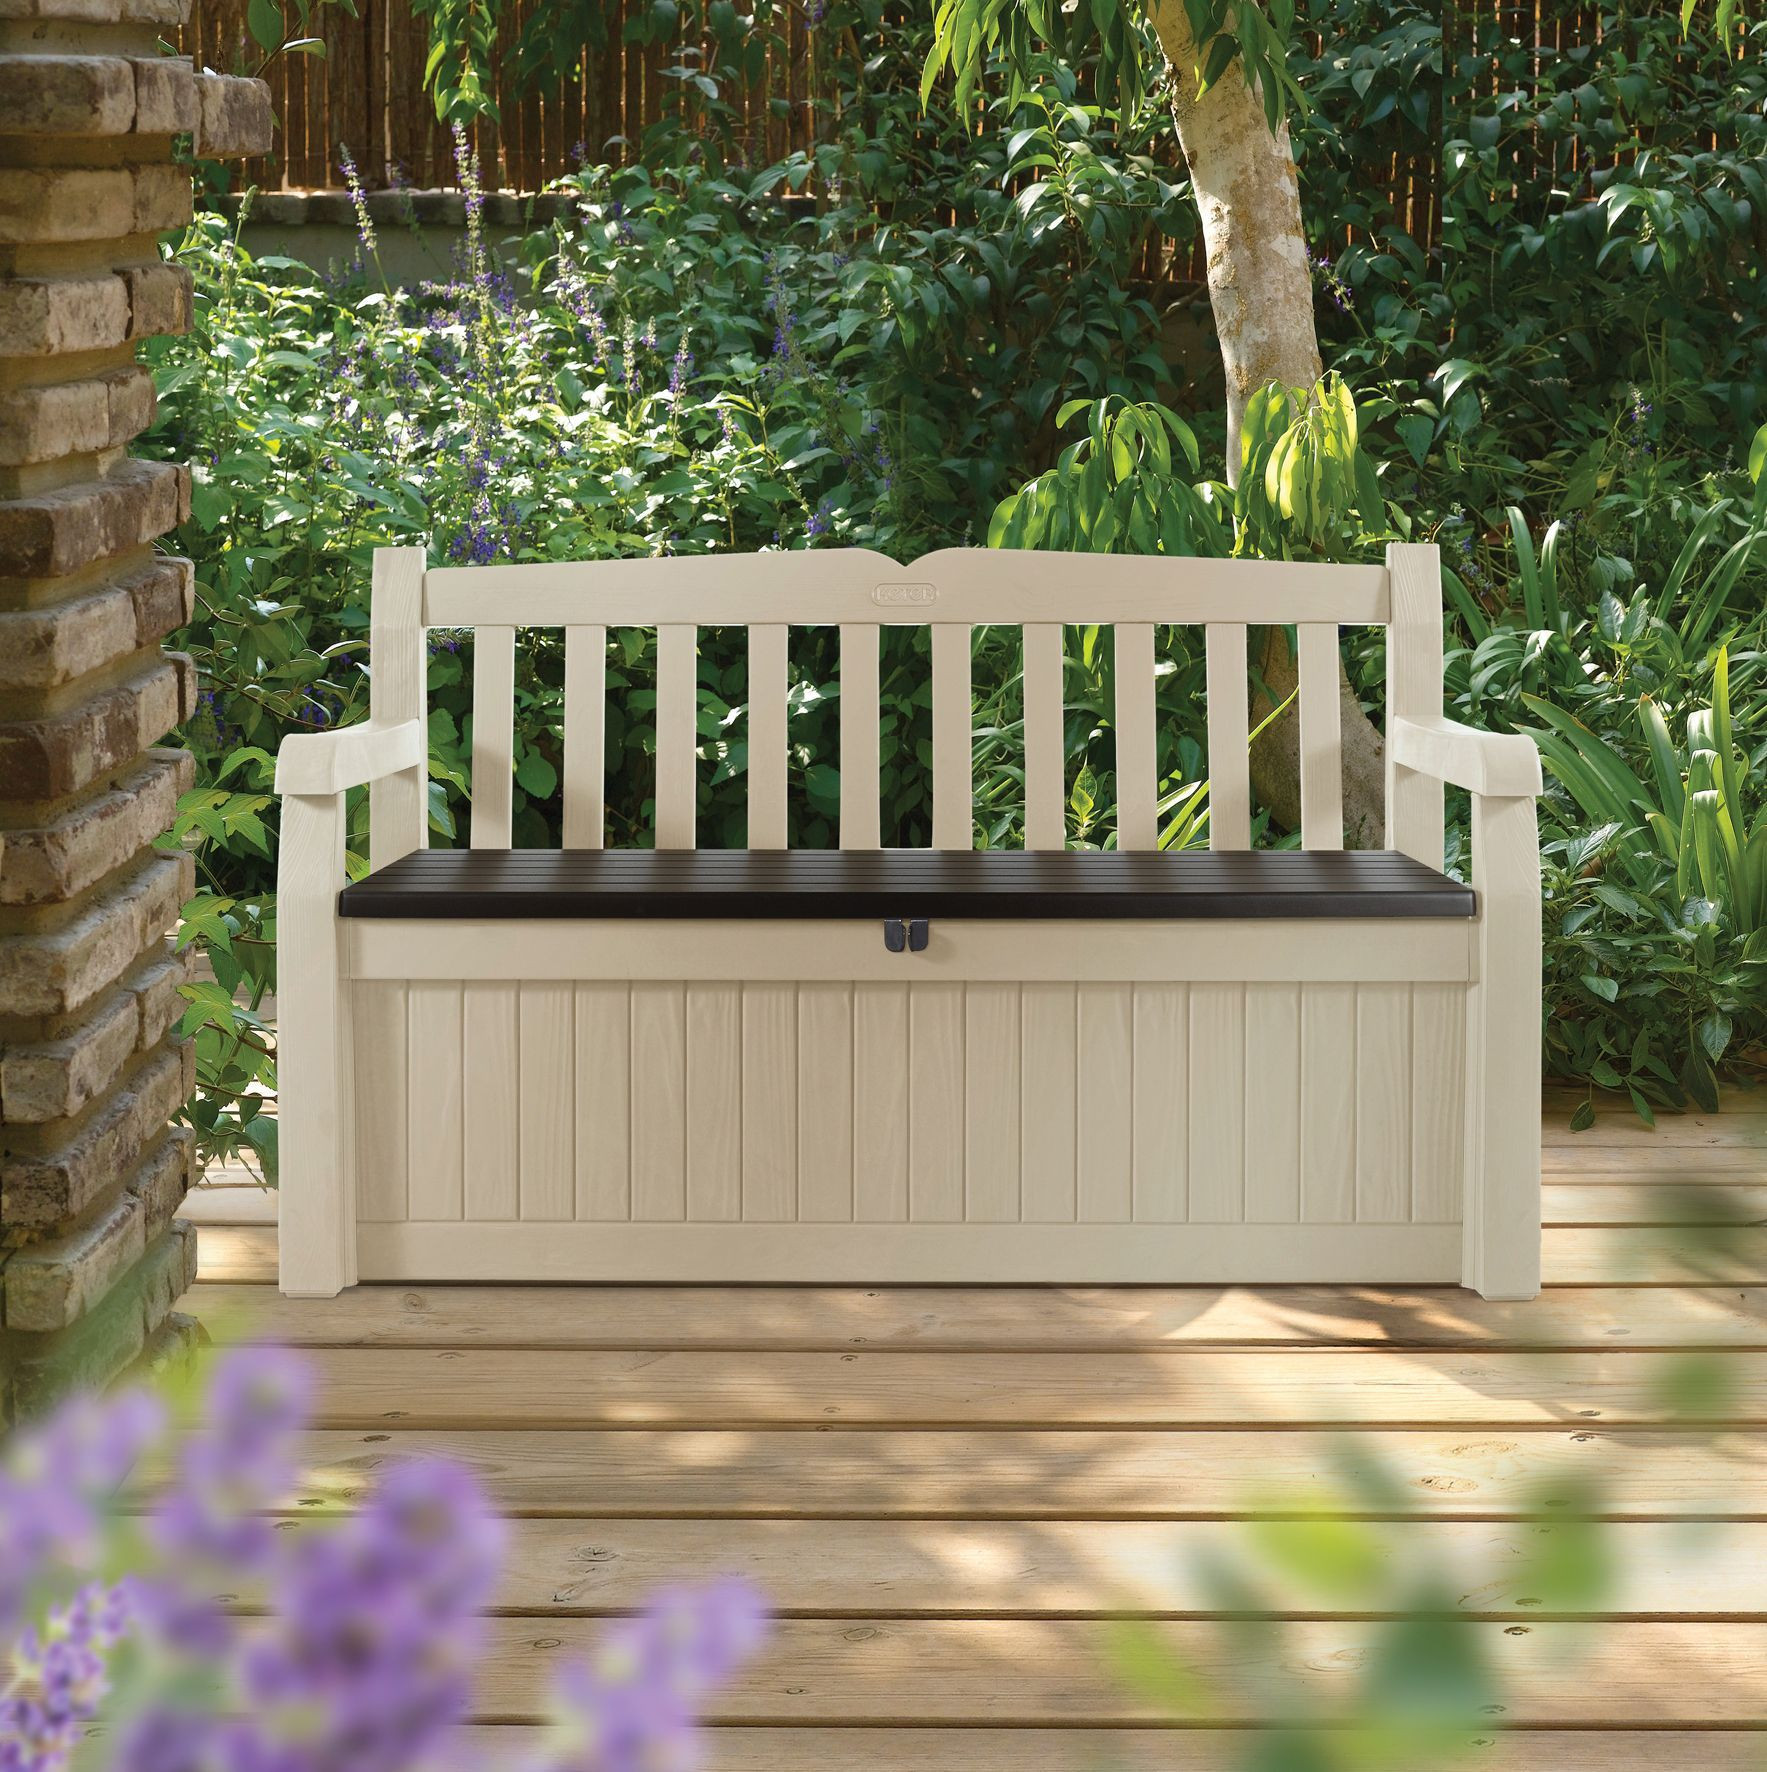 Outdoor Bench With Storage
 Eden Plastic Garden Storage Bench Departments